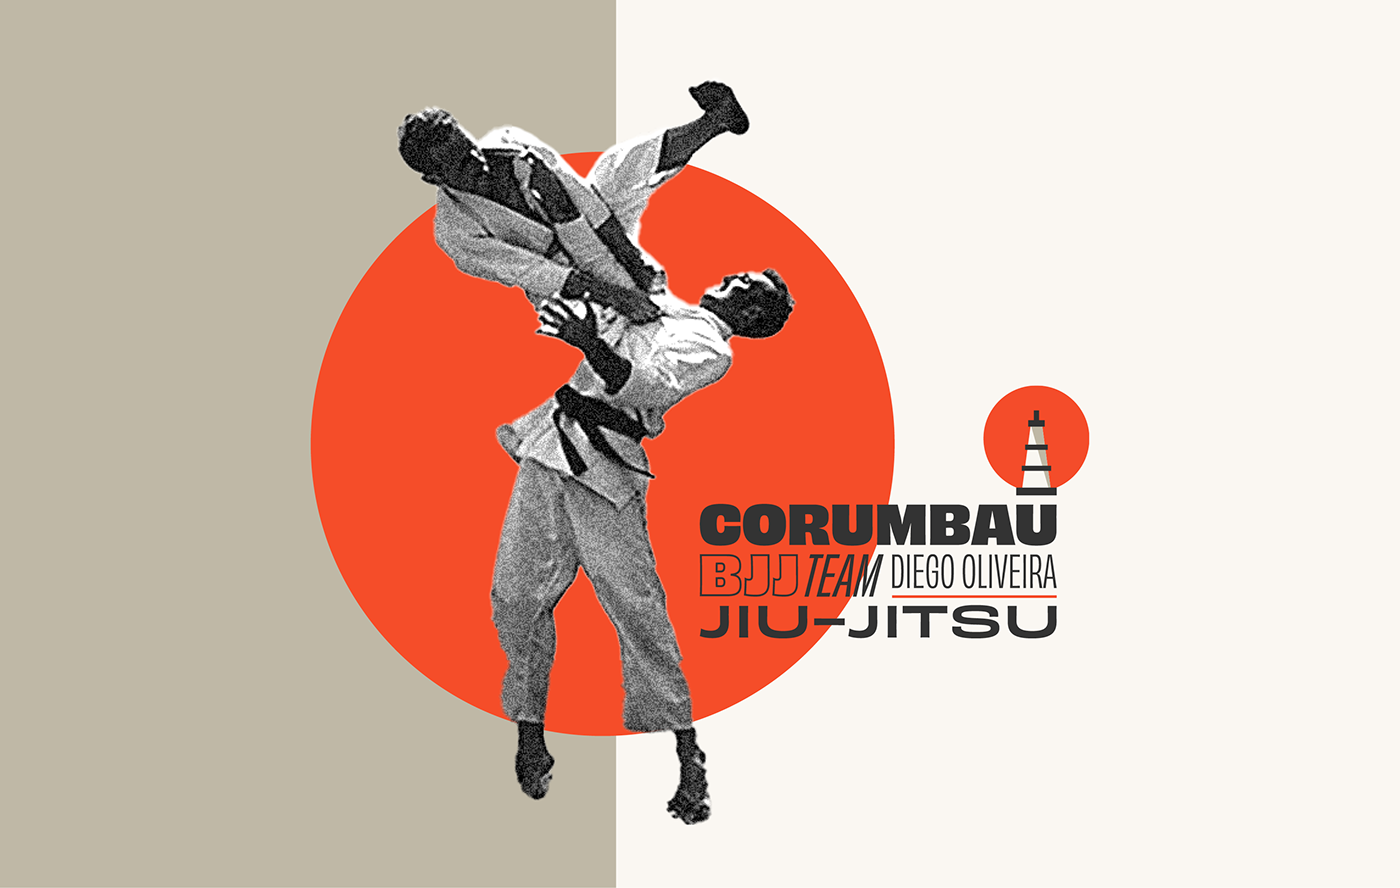 jiu jitsu BJJ jitsu team design Esporte luta Corumbau